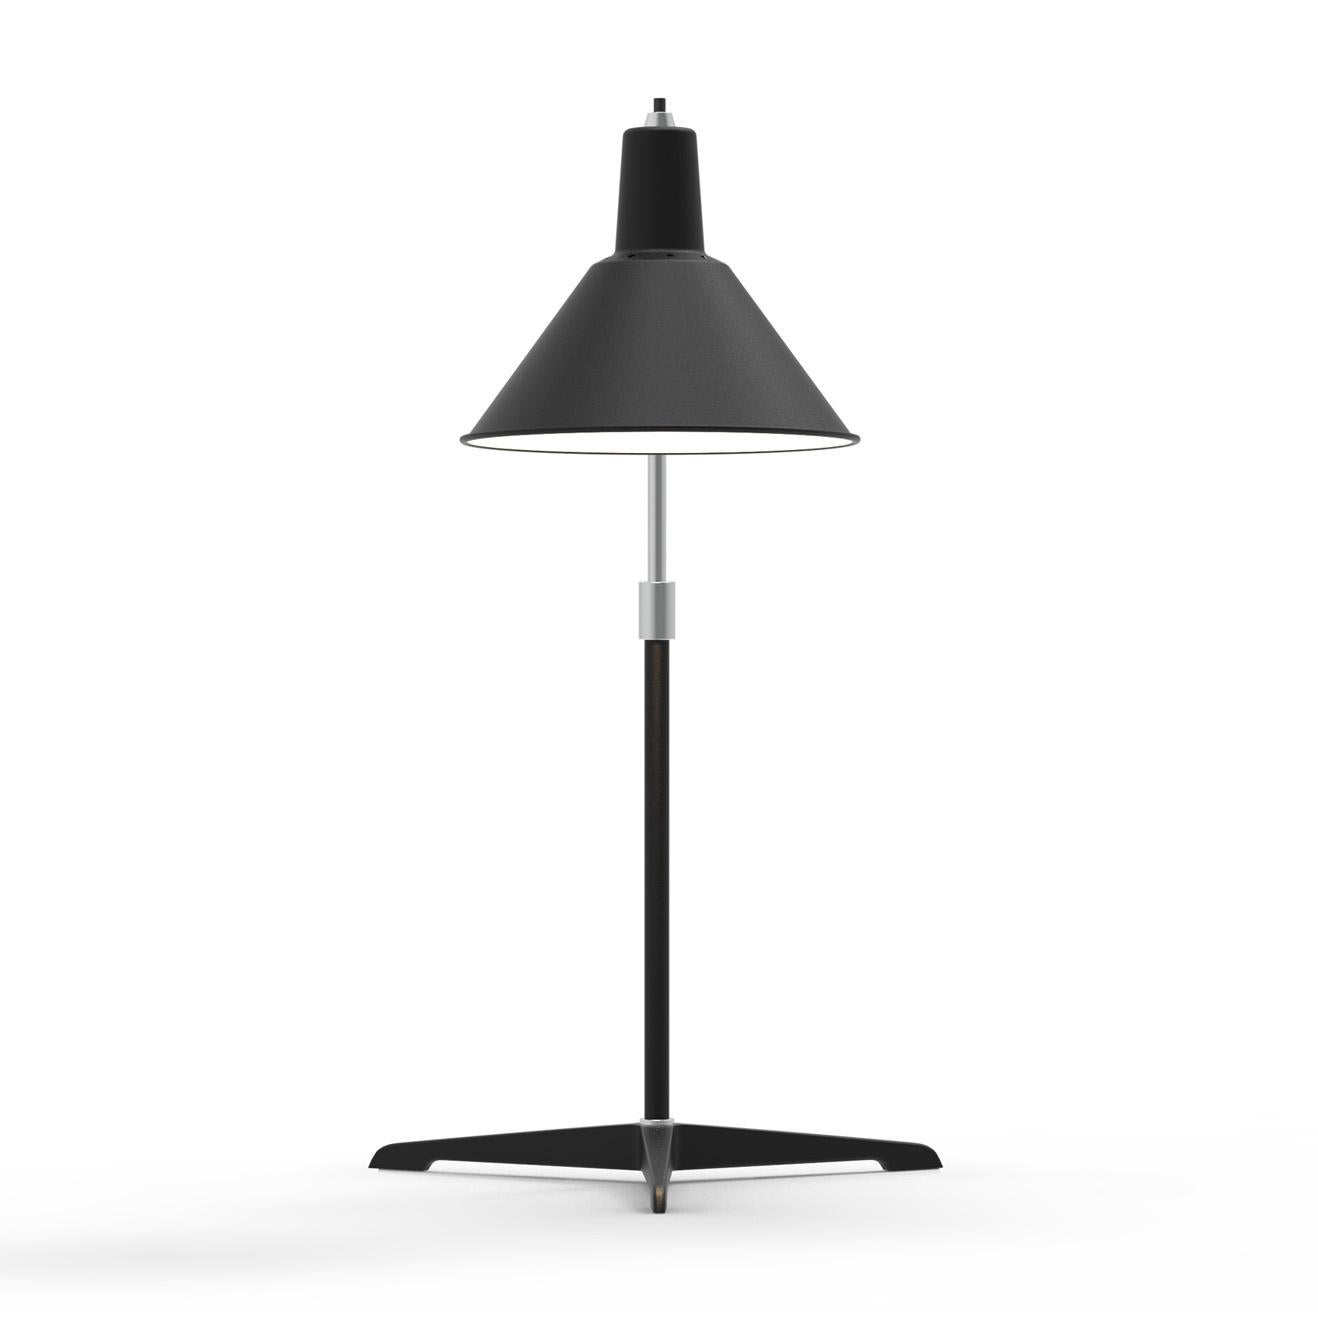 La série de lampes Arcon est une conversion architecturale entre fonction et proportion. L'objectif de la lampe de table Arcon était de créer une lampe de table fonctionnelle et épurée, mais pouvant être ajustée par quelques touches. Elle fonctionne